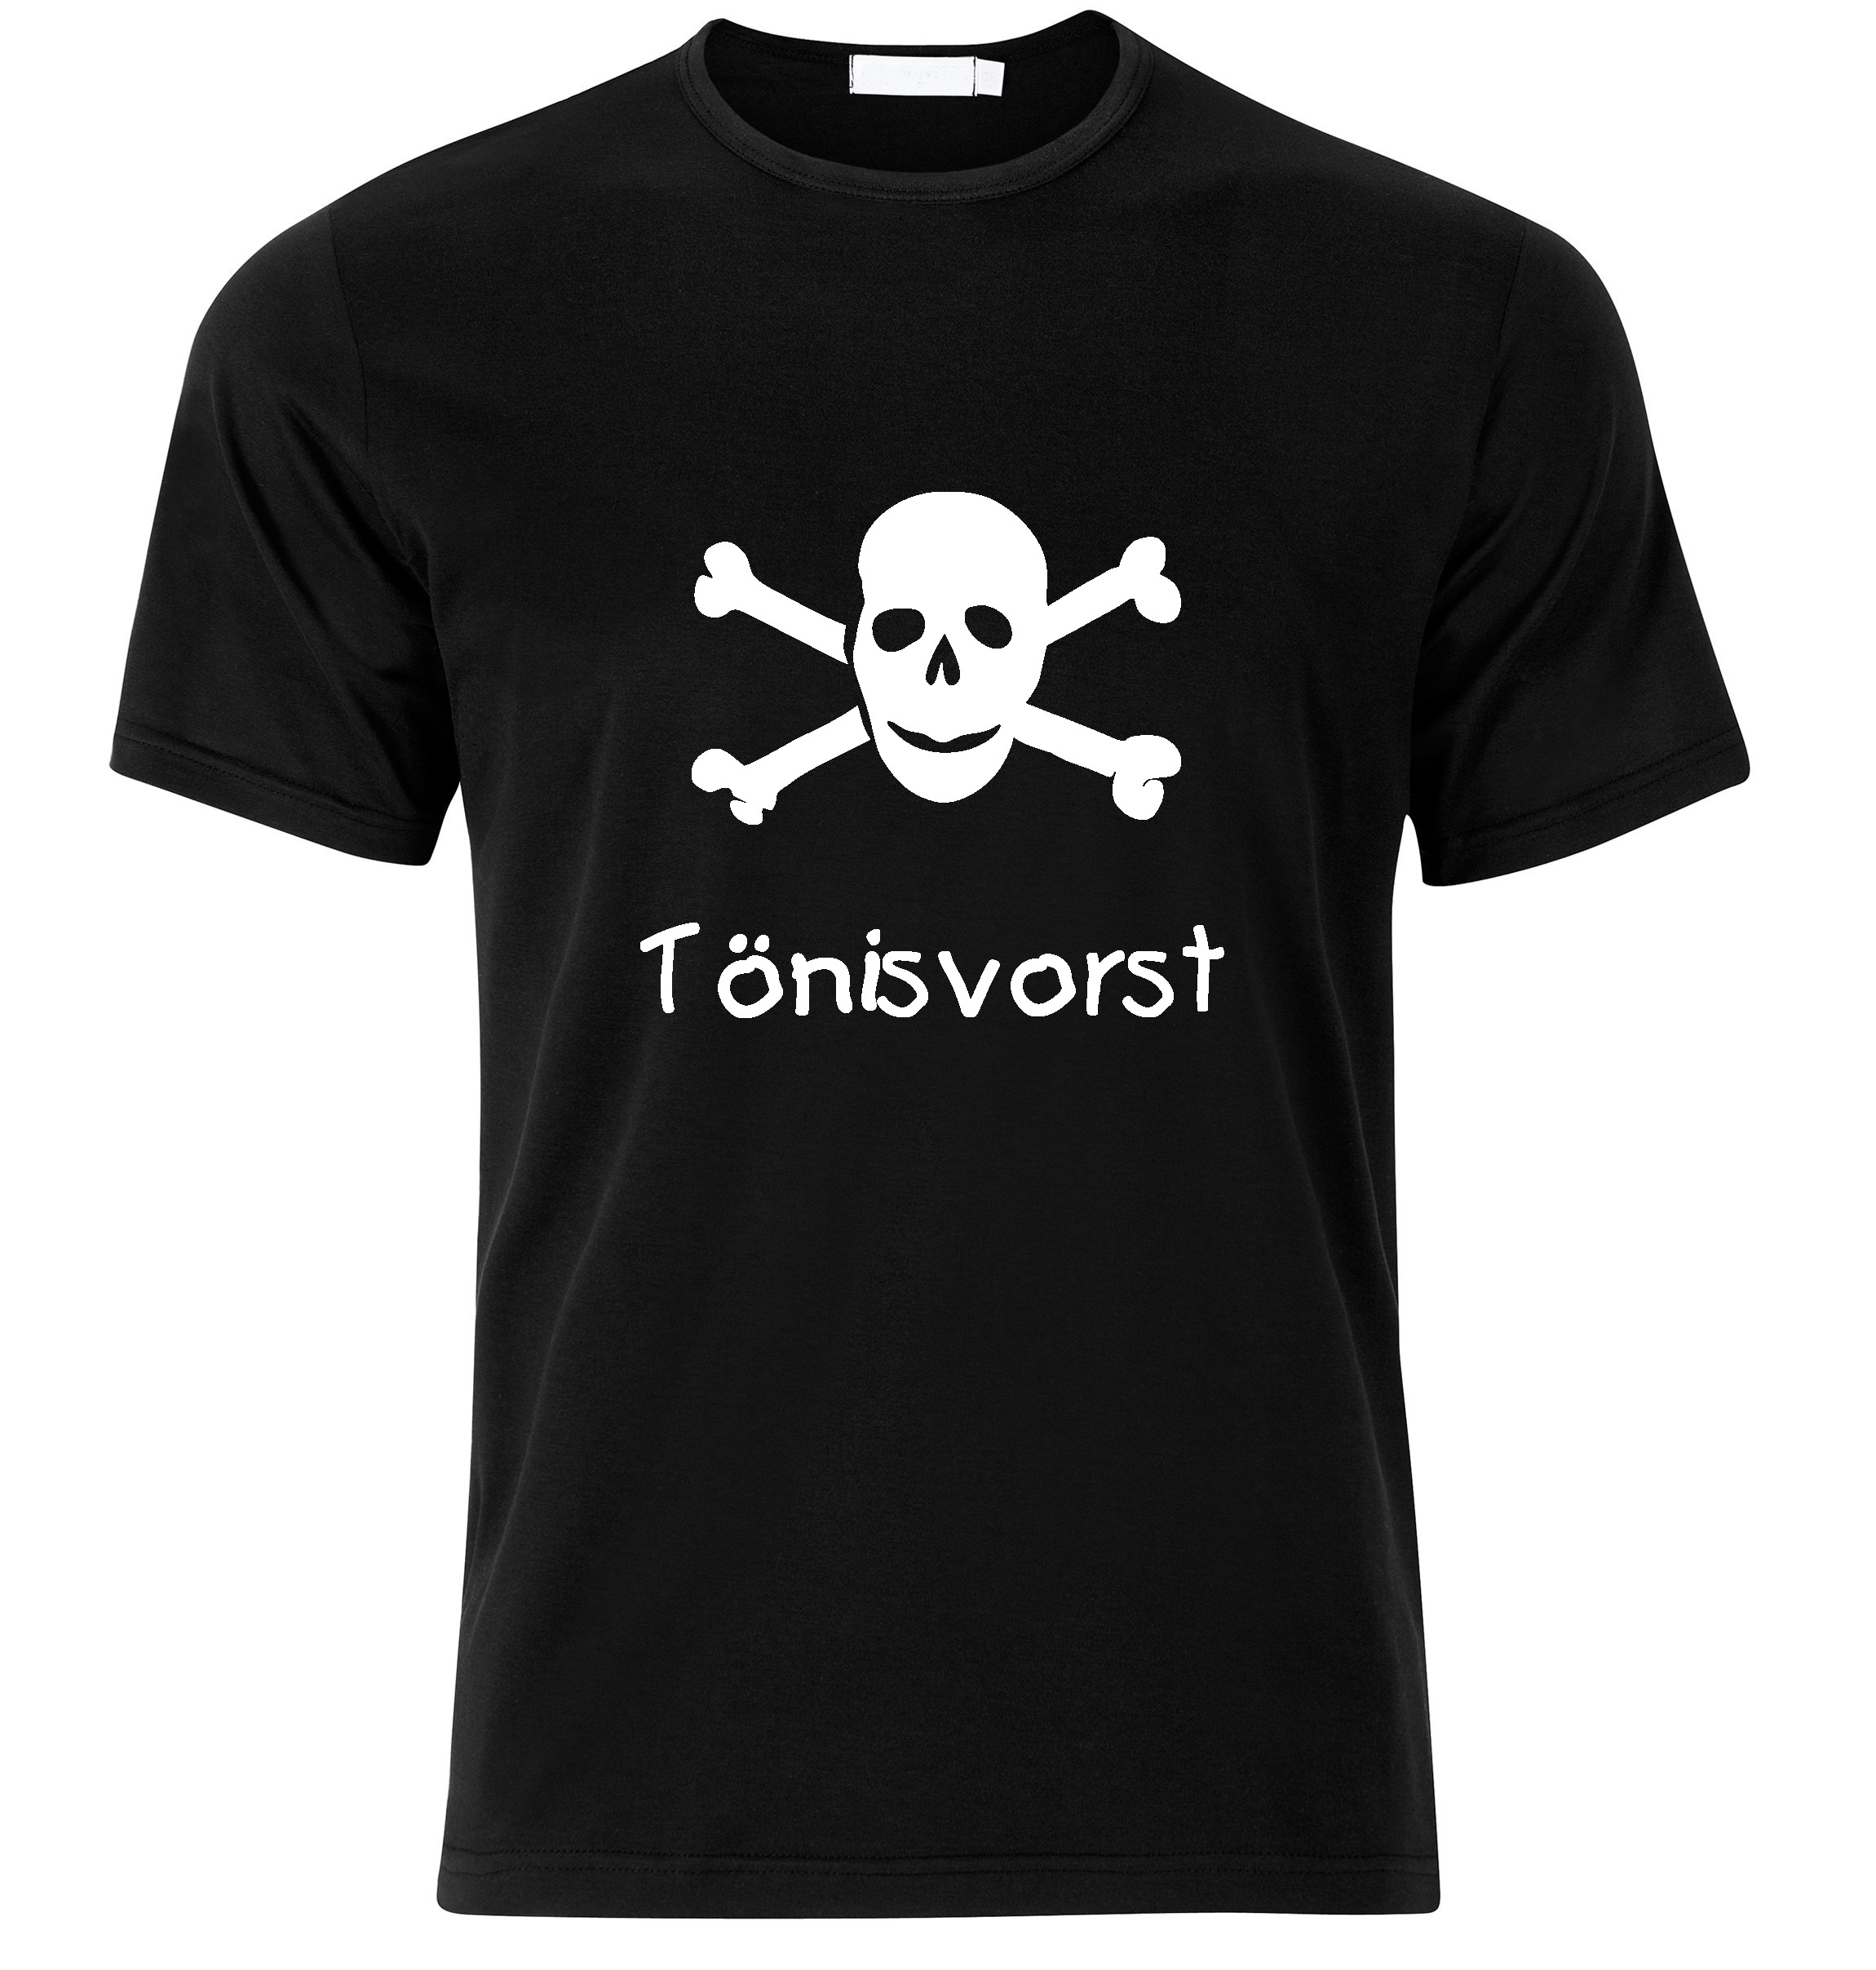 T-Shirt Tönisvorst Jolly Roger, Totenkopf